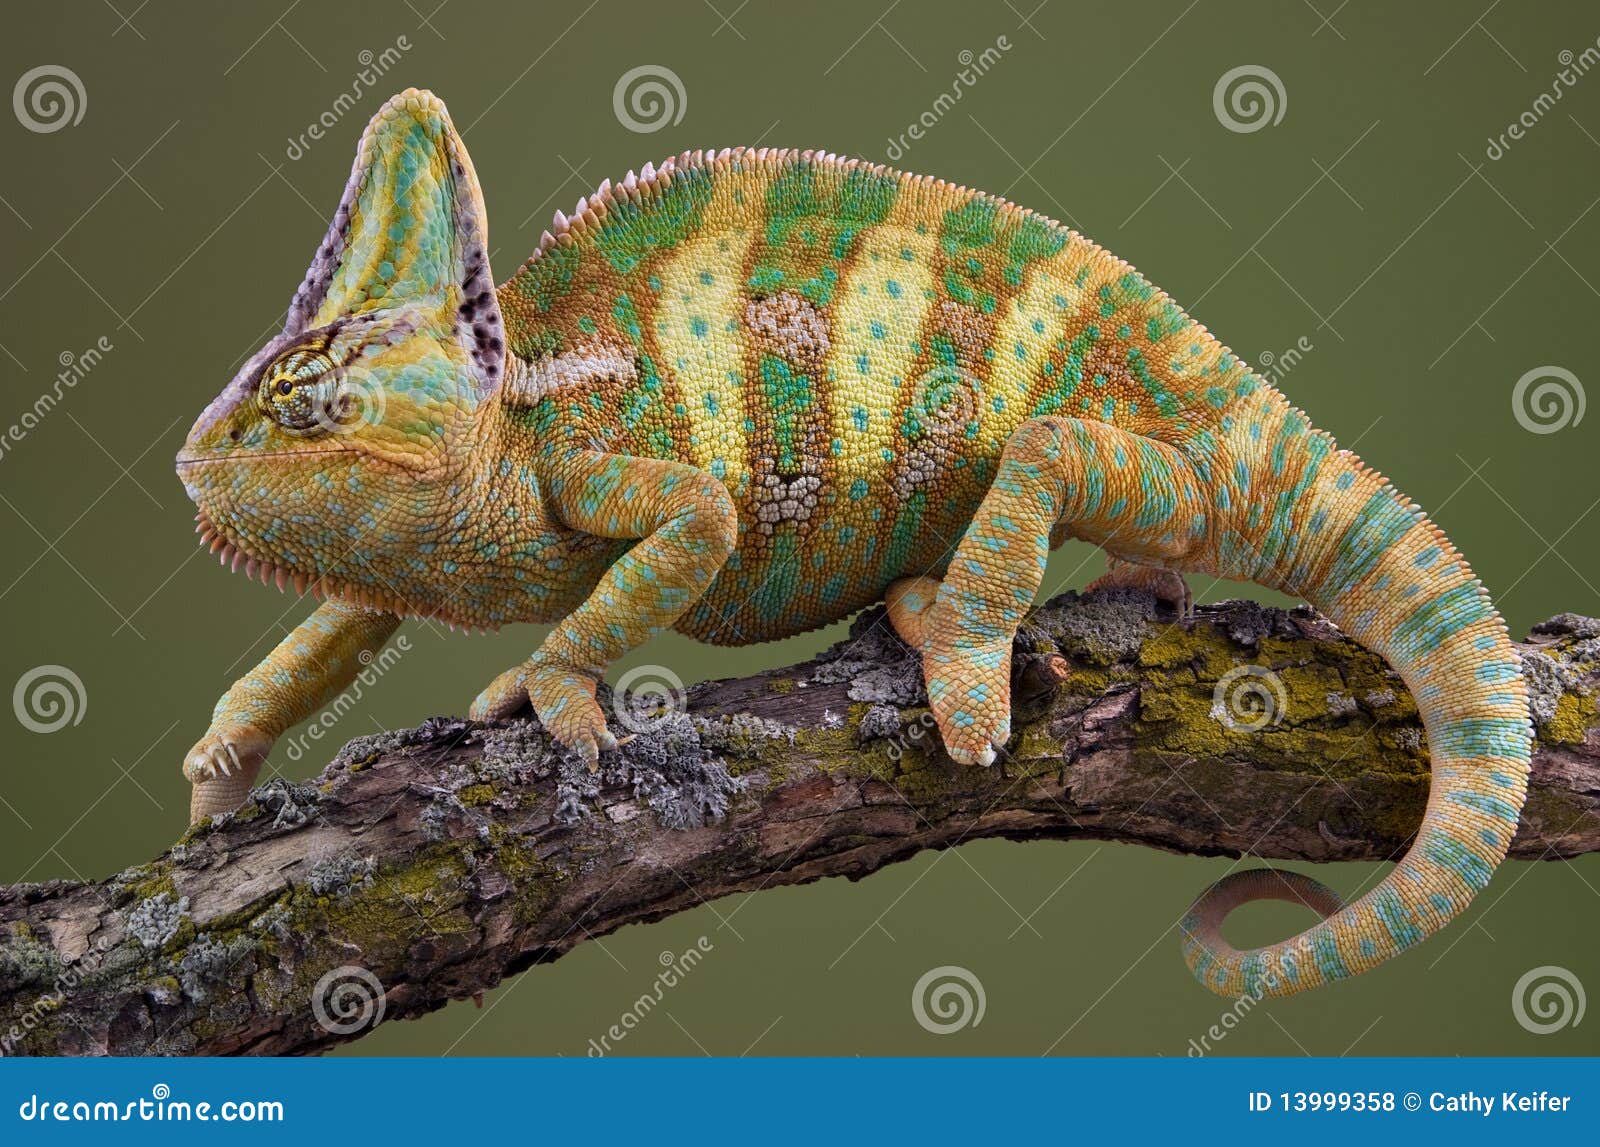 Walking Chameleon stock photo. Image of chameleon, veiled ...